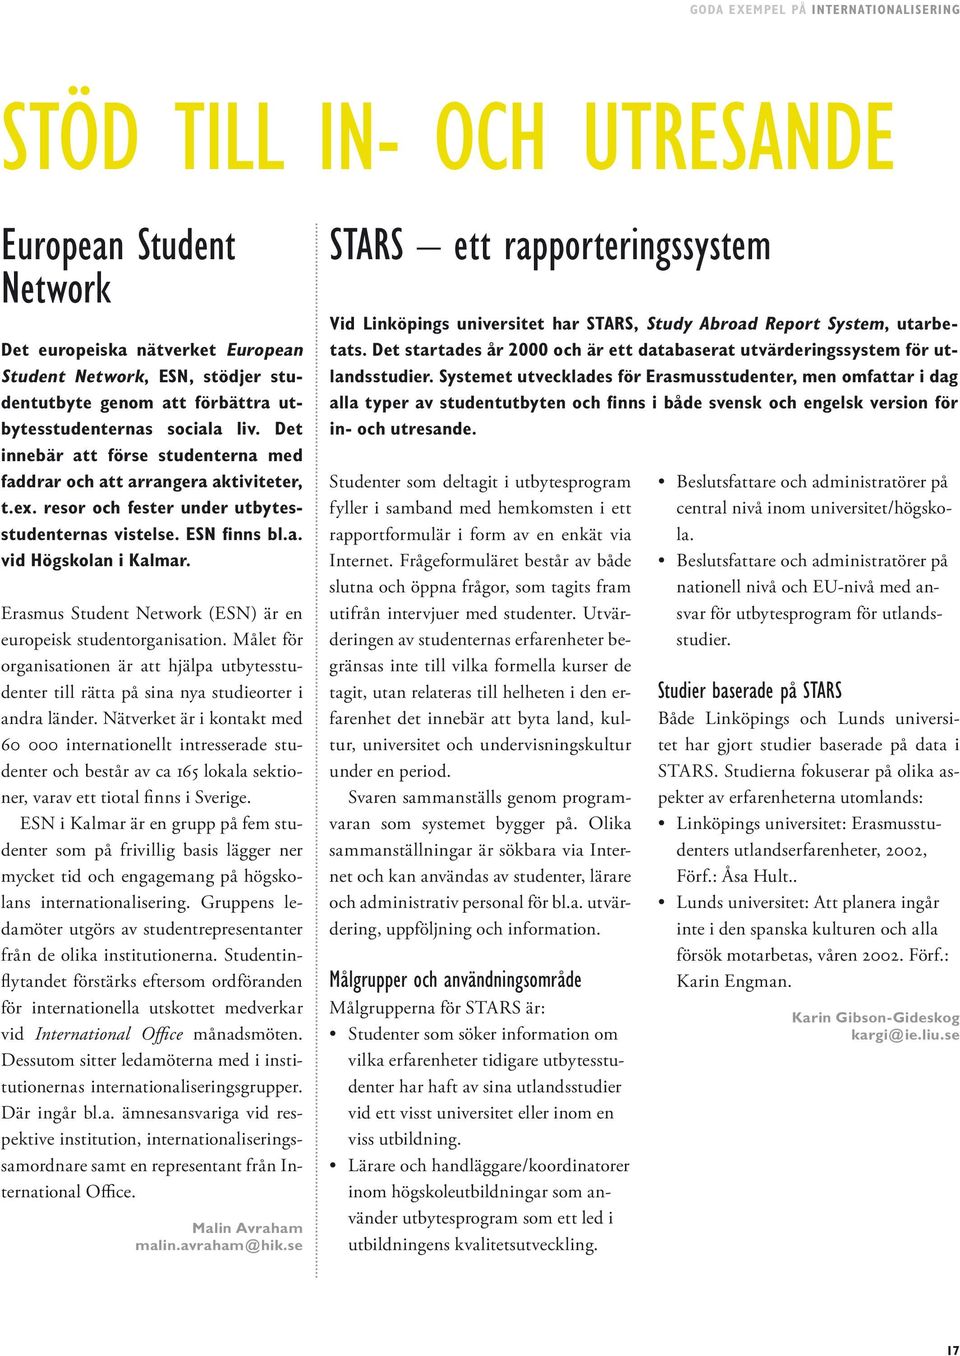 Erasmus Student Network (ESN) är en europeisk studentorganisation. Målet för organisationen är att hjälpa utbytesstudenter till rätta på sina nya studieorter i andra länder.